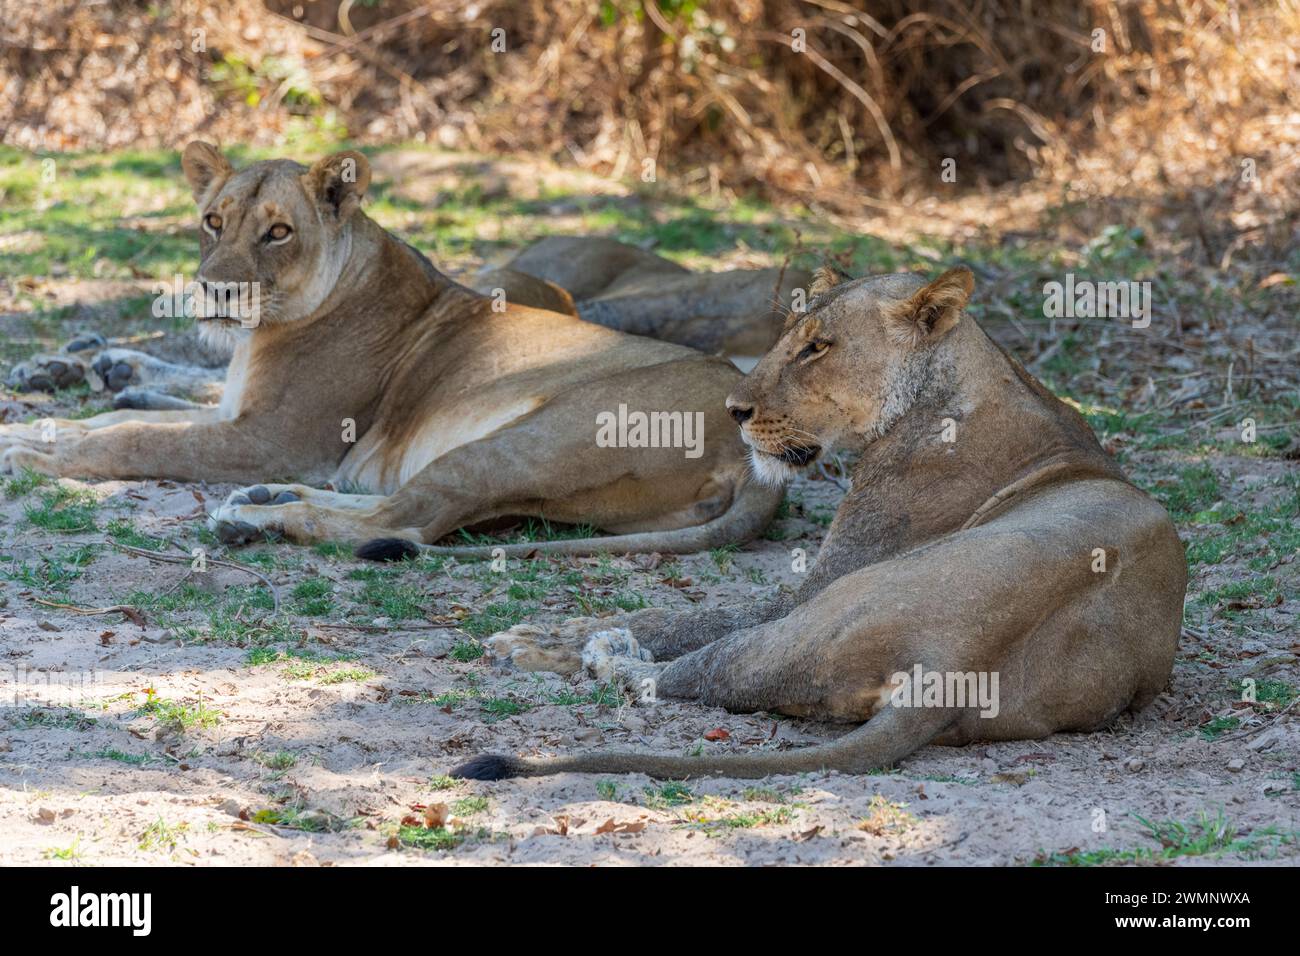 Un groupe de lions femelles (Panthera leo) reposant à l'ombre dans le parc national de South Luangwa en Zambie, Afrique australe Banque D'Images